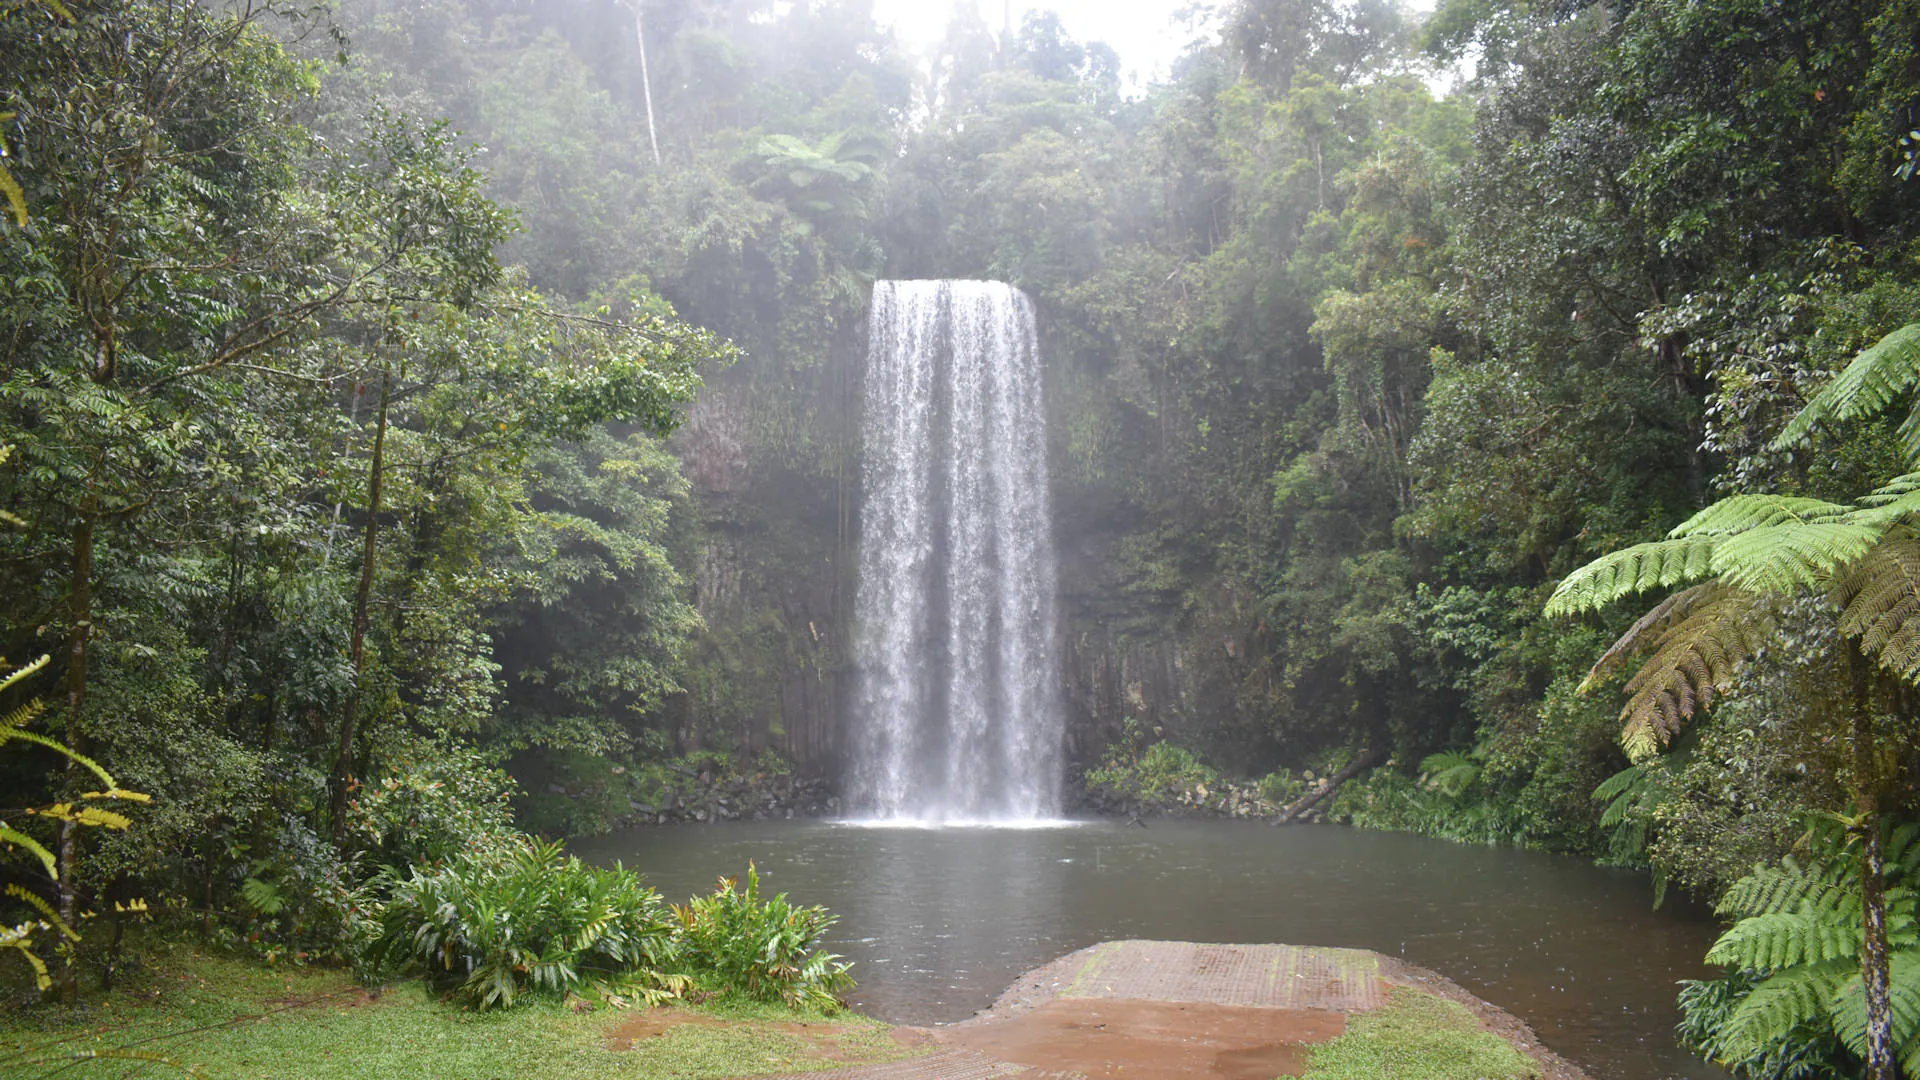 Millaa Millaa Falls during a rainy day